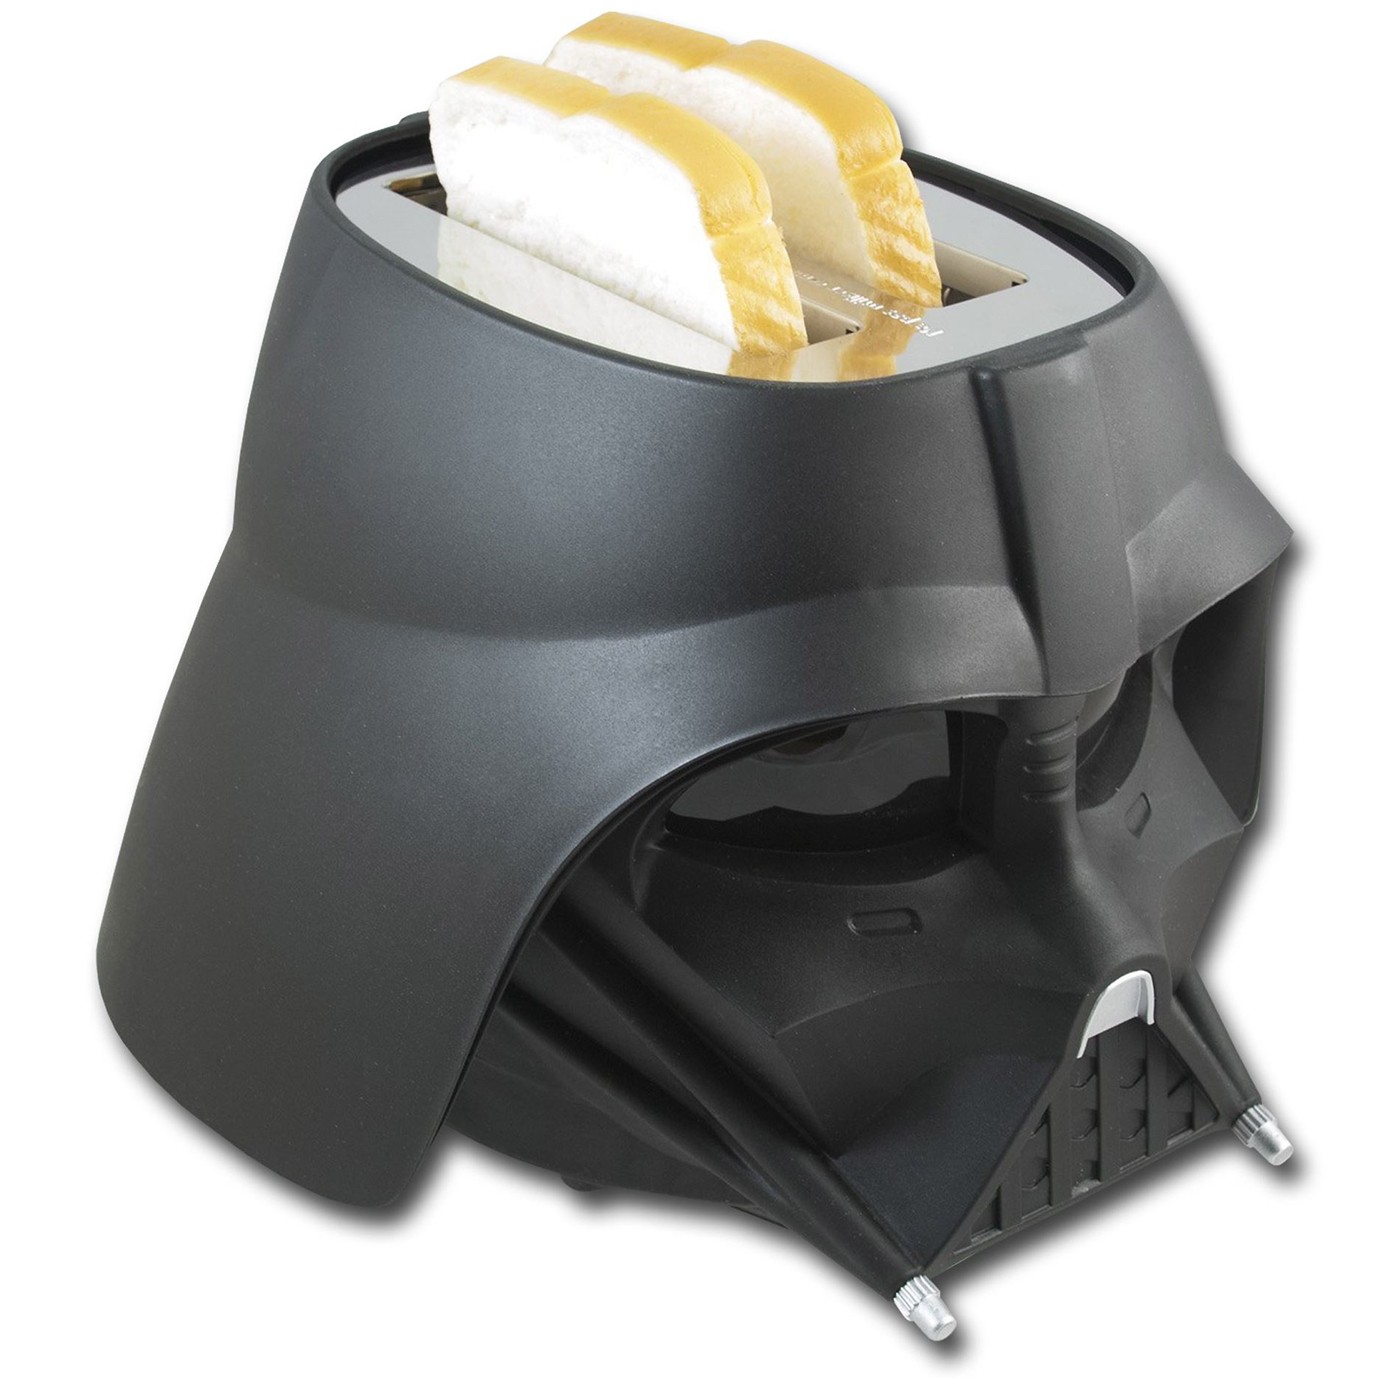 Star Wars Darth Vader Toaster